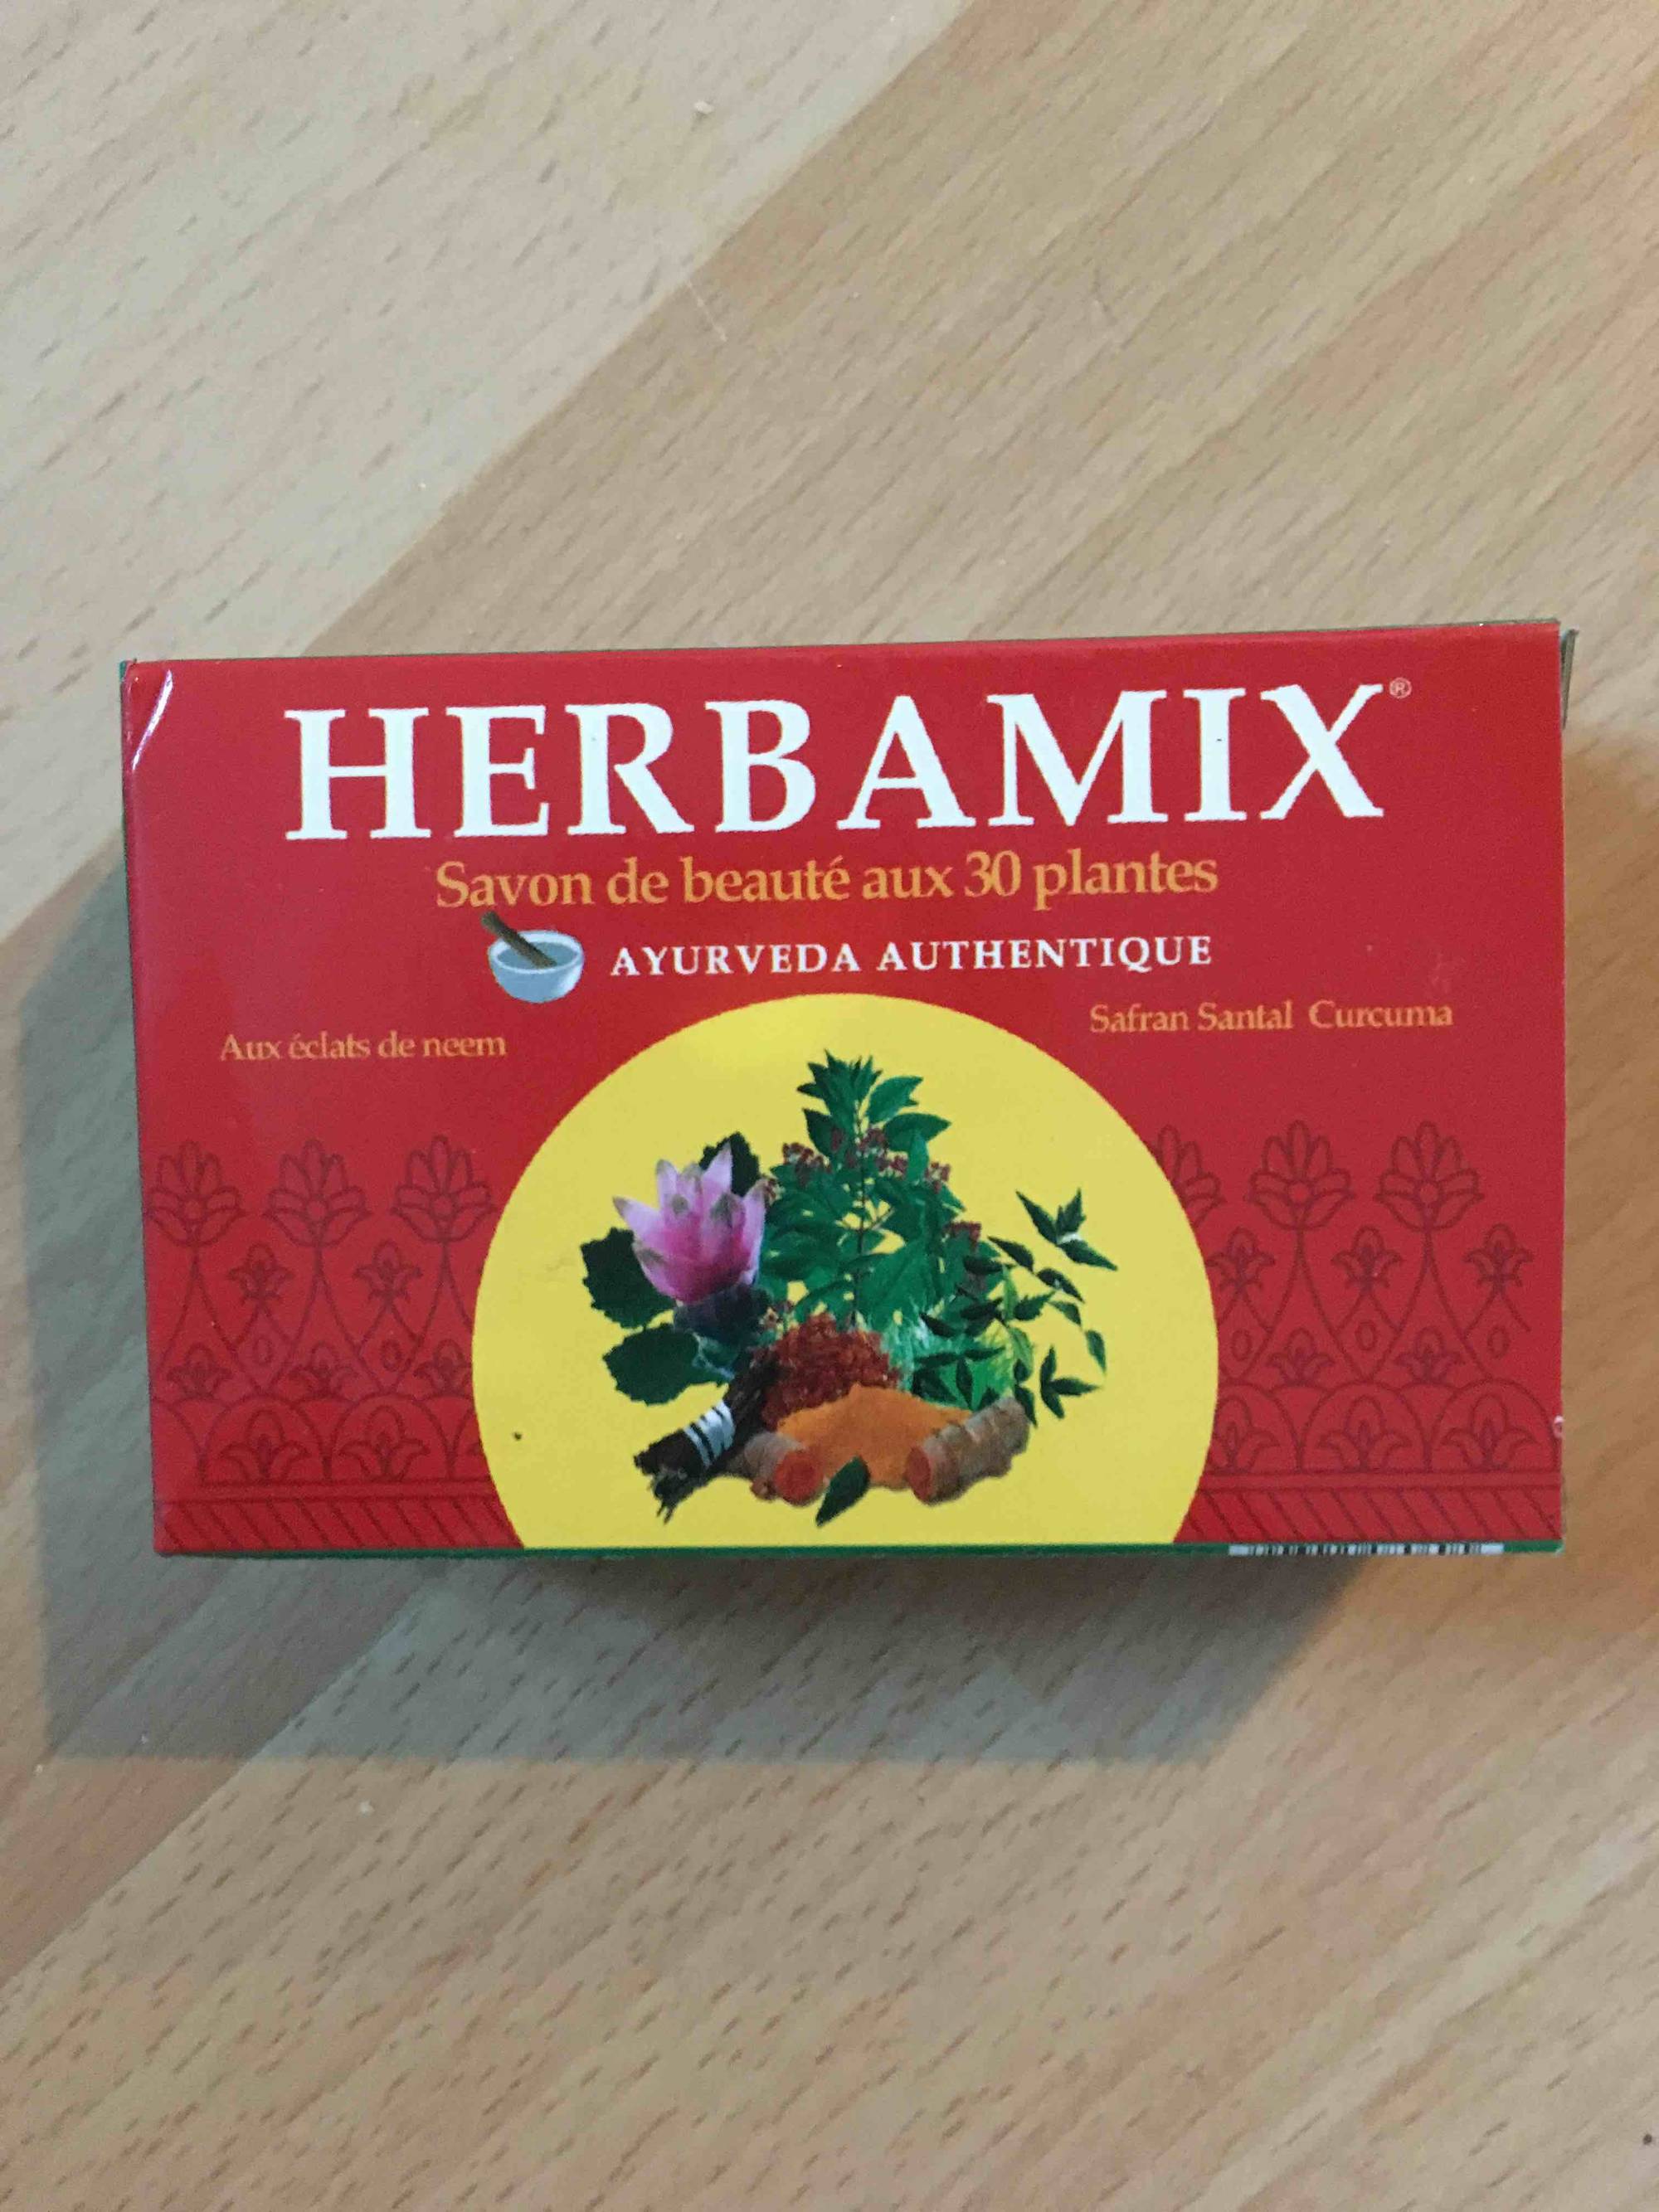 HERBAMIX - Savon de beauté aux 30 plantes